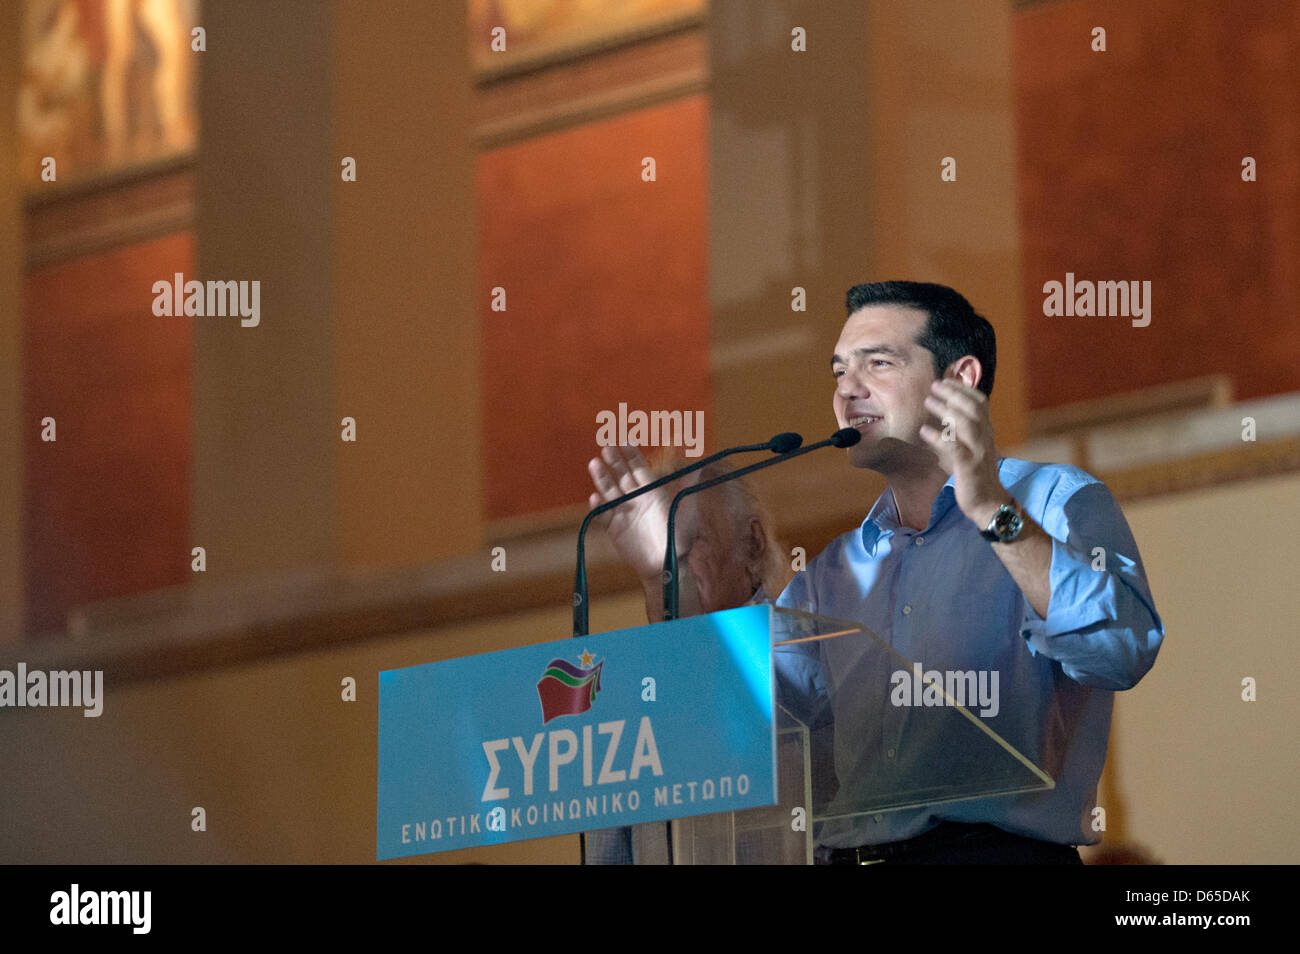 Alexis Tsipras, leader del greco partito SYRIZA, parla ai seguaci durante le elezioni in Atene, 17 giugno 2012. Le elezioni parlamentari in Grecia hanno portato ad una vittoria per il conservatore nuova democrazia partito. Foto: Emily Wabitsch Foto Stock